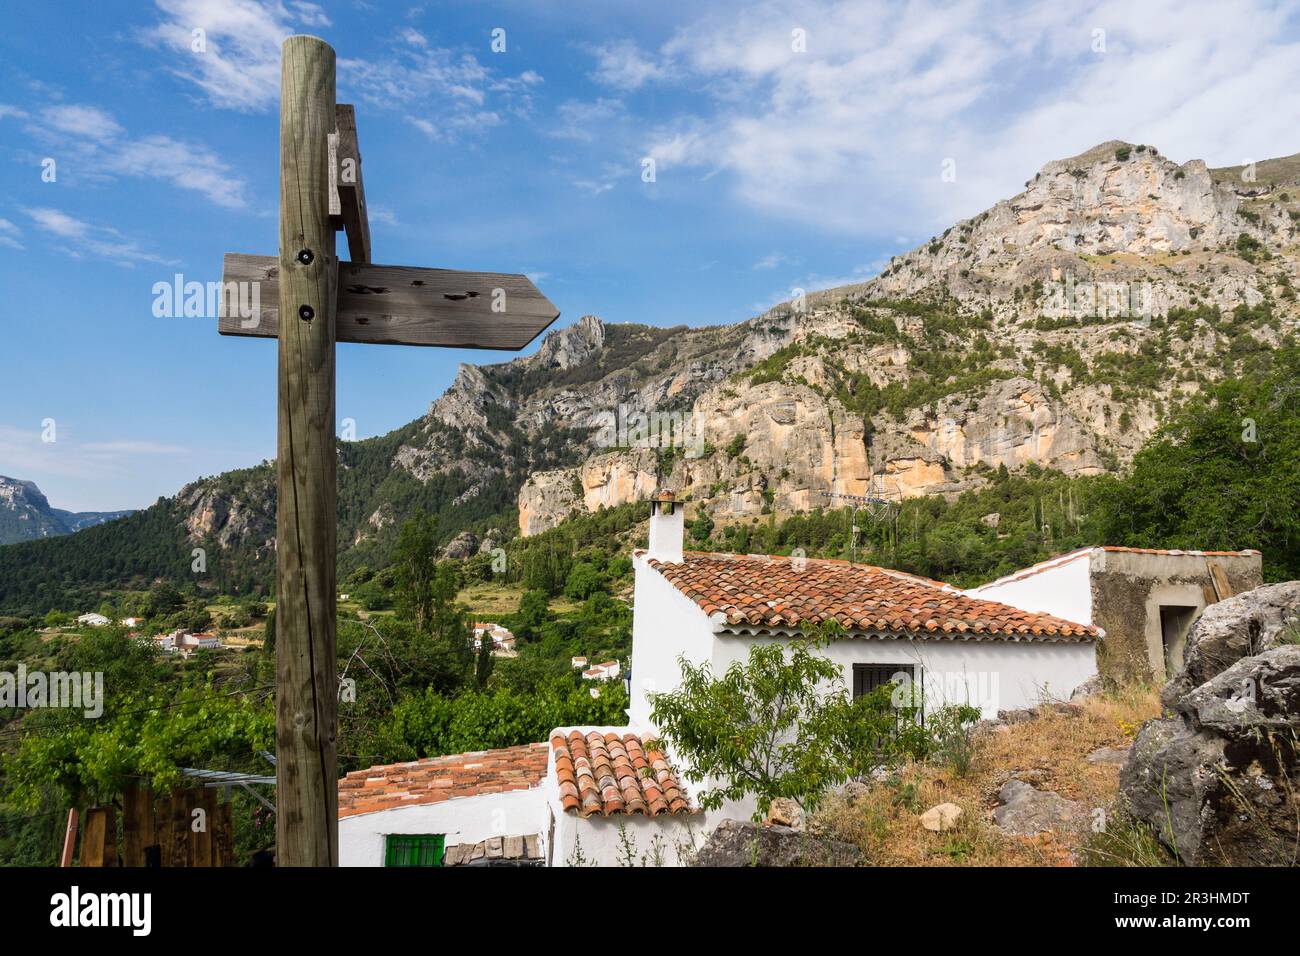 pueblo de las Gorgollitas bajo la Loma del Calar, Parque Natural de las Sierras de Cazorla, Segura y Las Villas , provincia de Jaén, Spain. Stock Photo